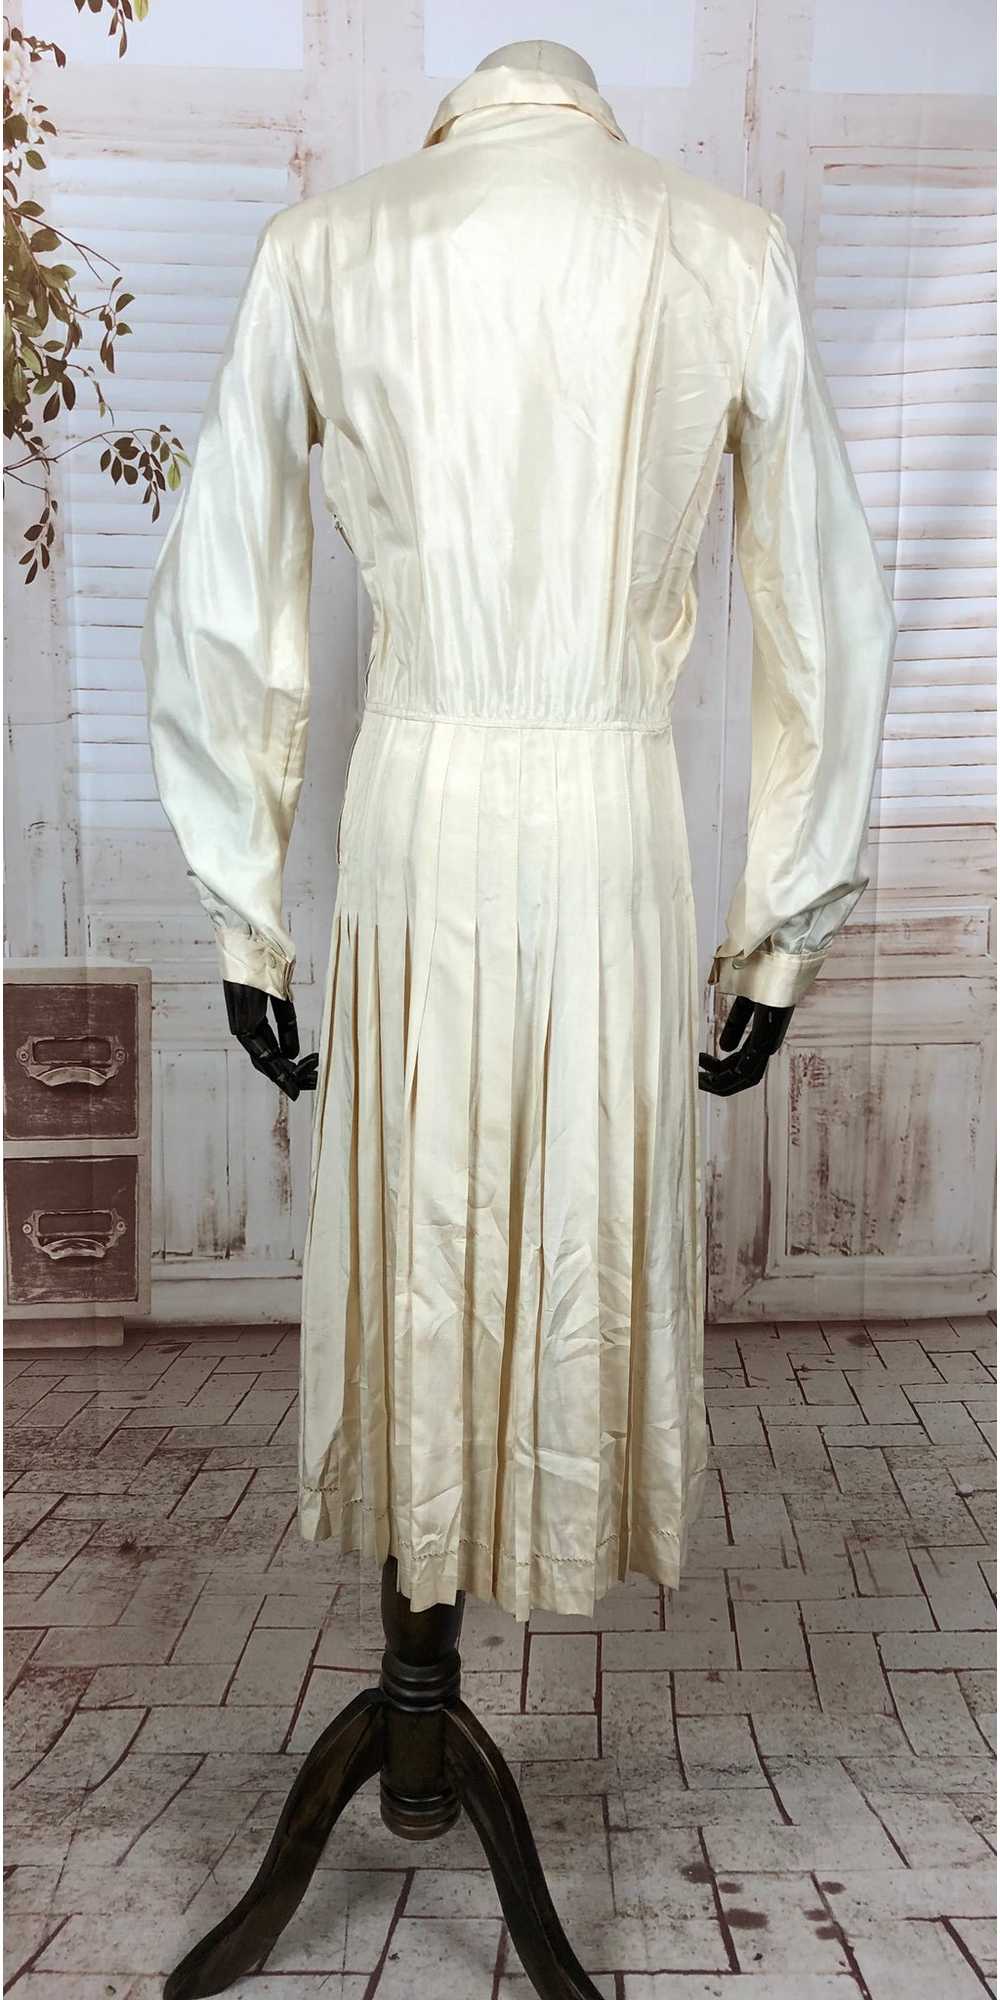 Original Vintage 1930s 30s Cream Silky Rayon Dres… - image 5